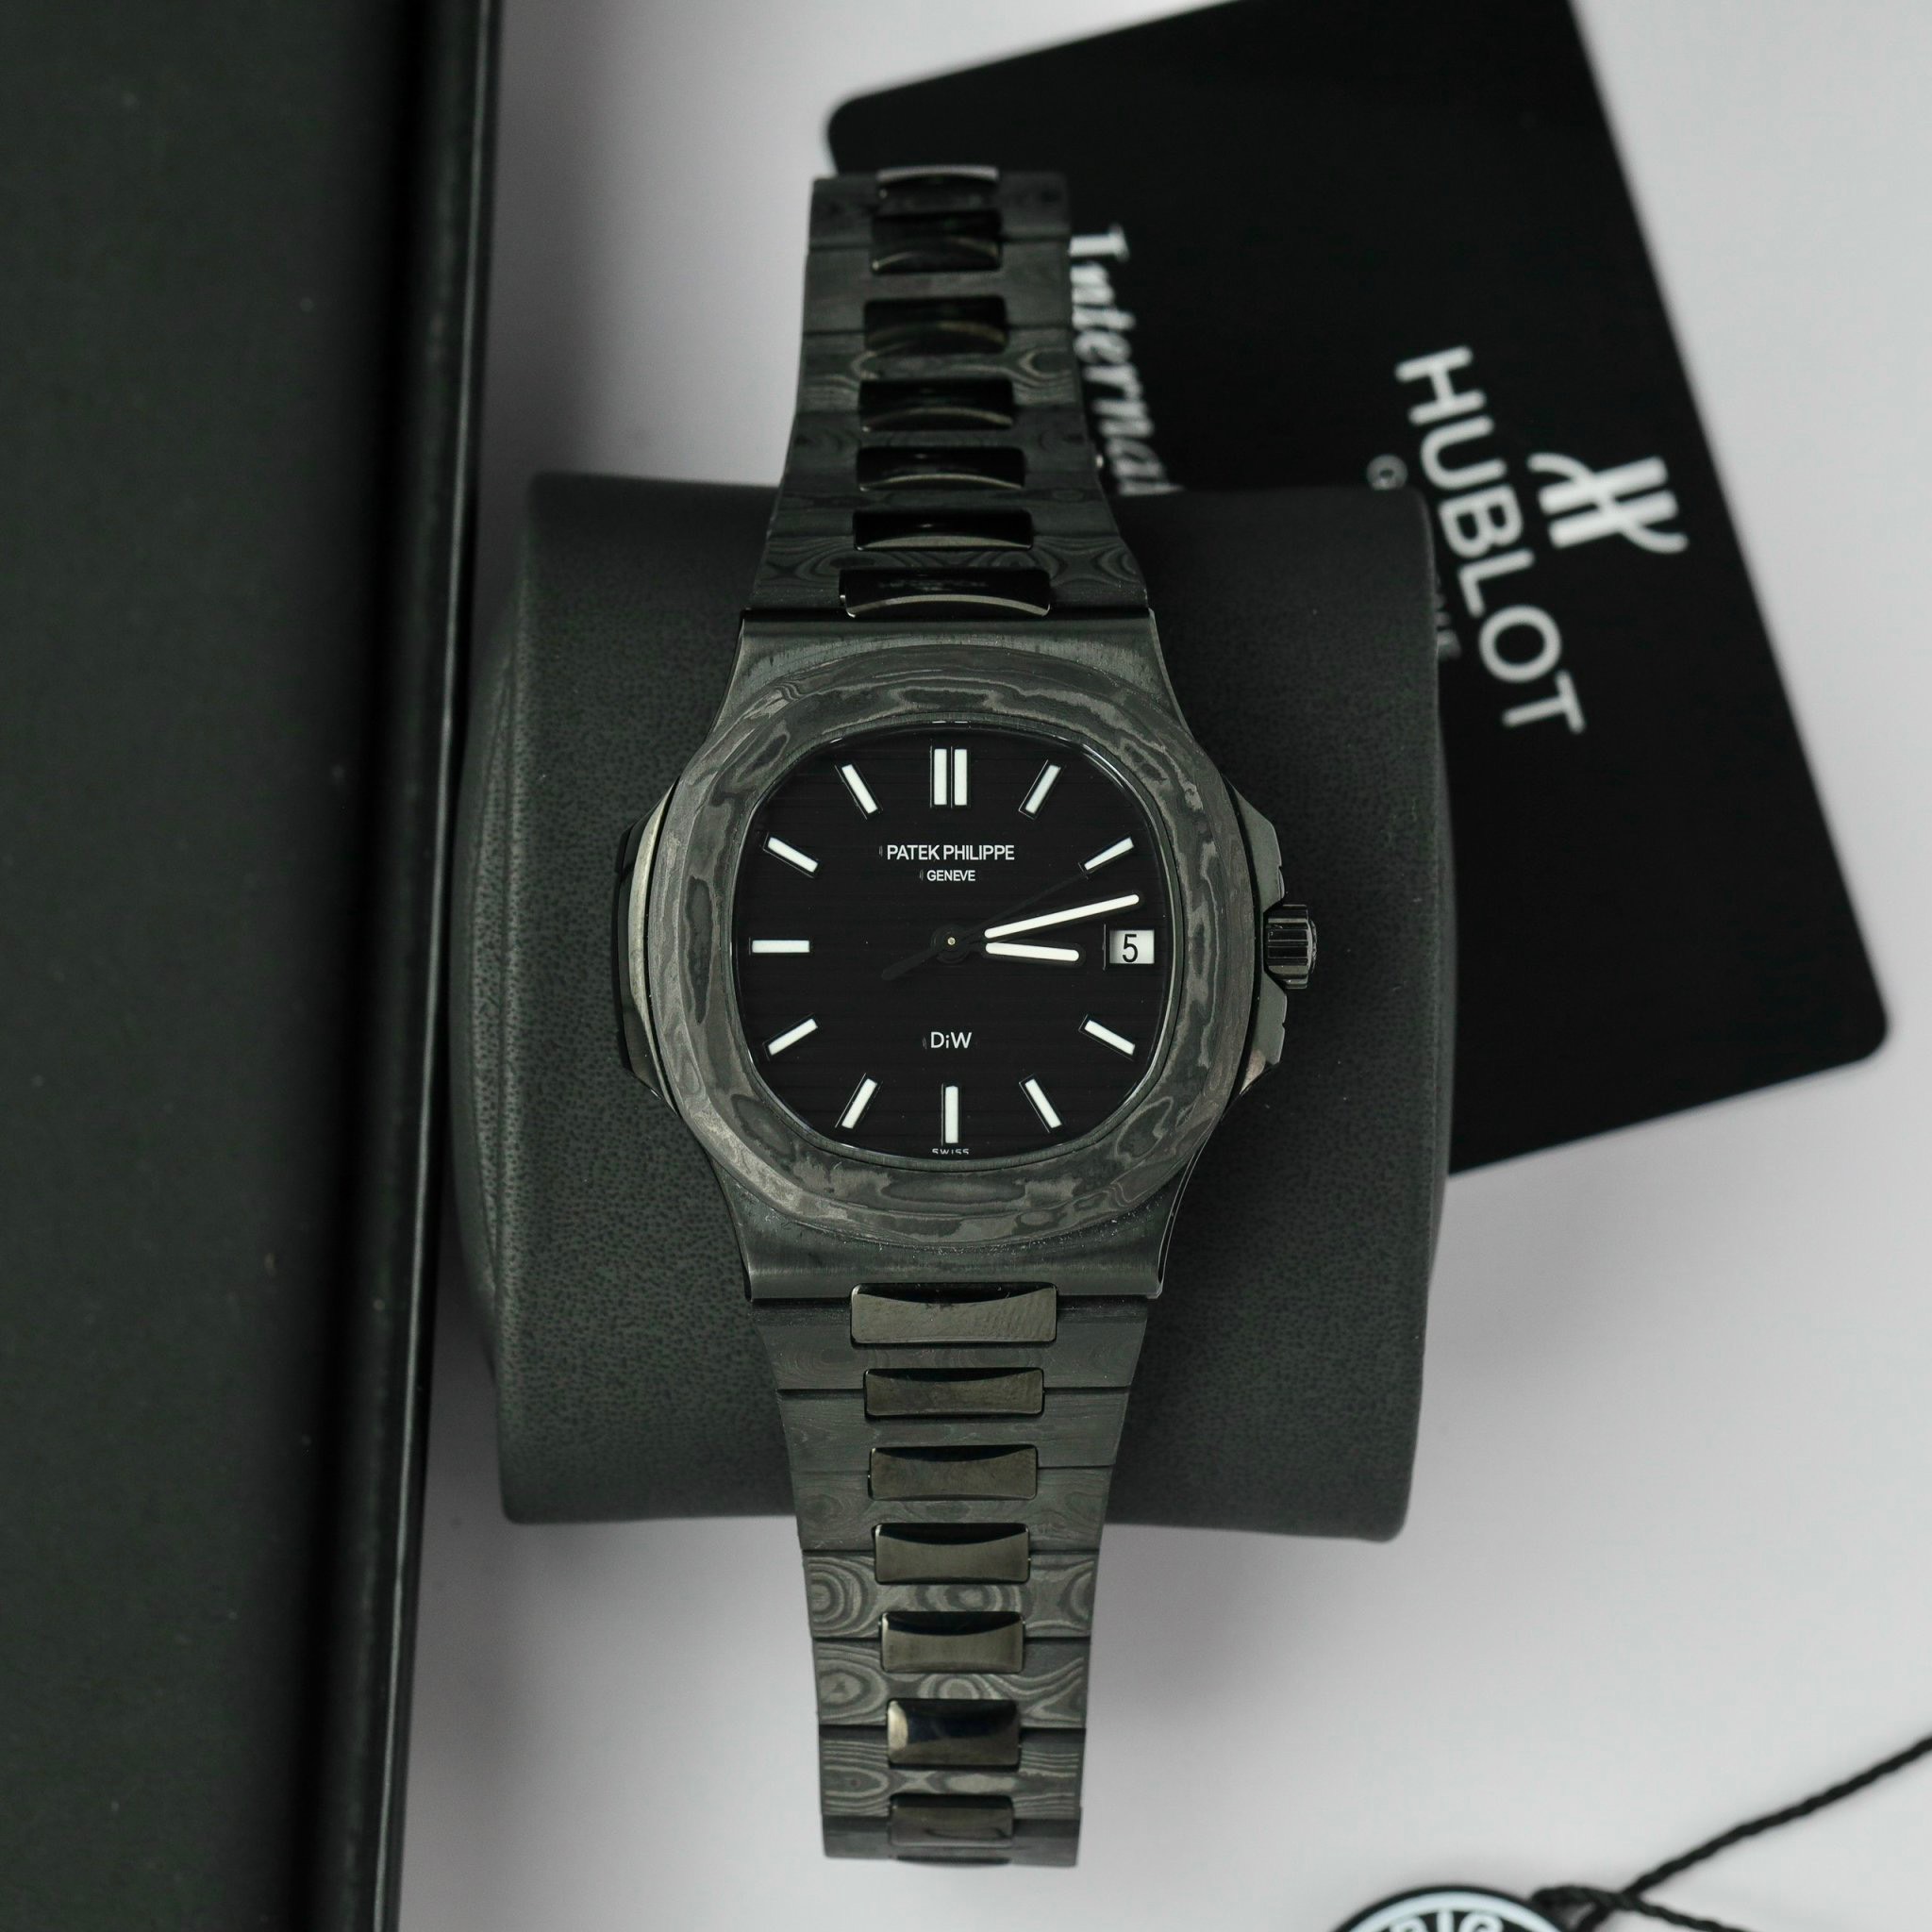 Patek Philippe Nautilus 5711 DiW Carbon Best Replica Watches 40mm ...